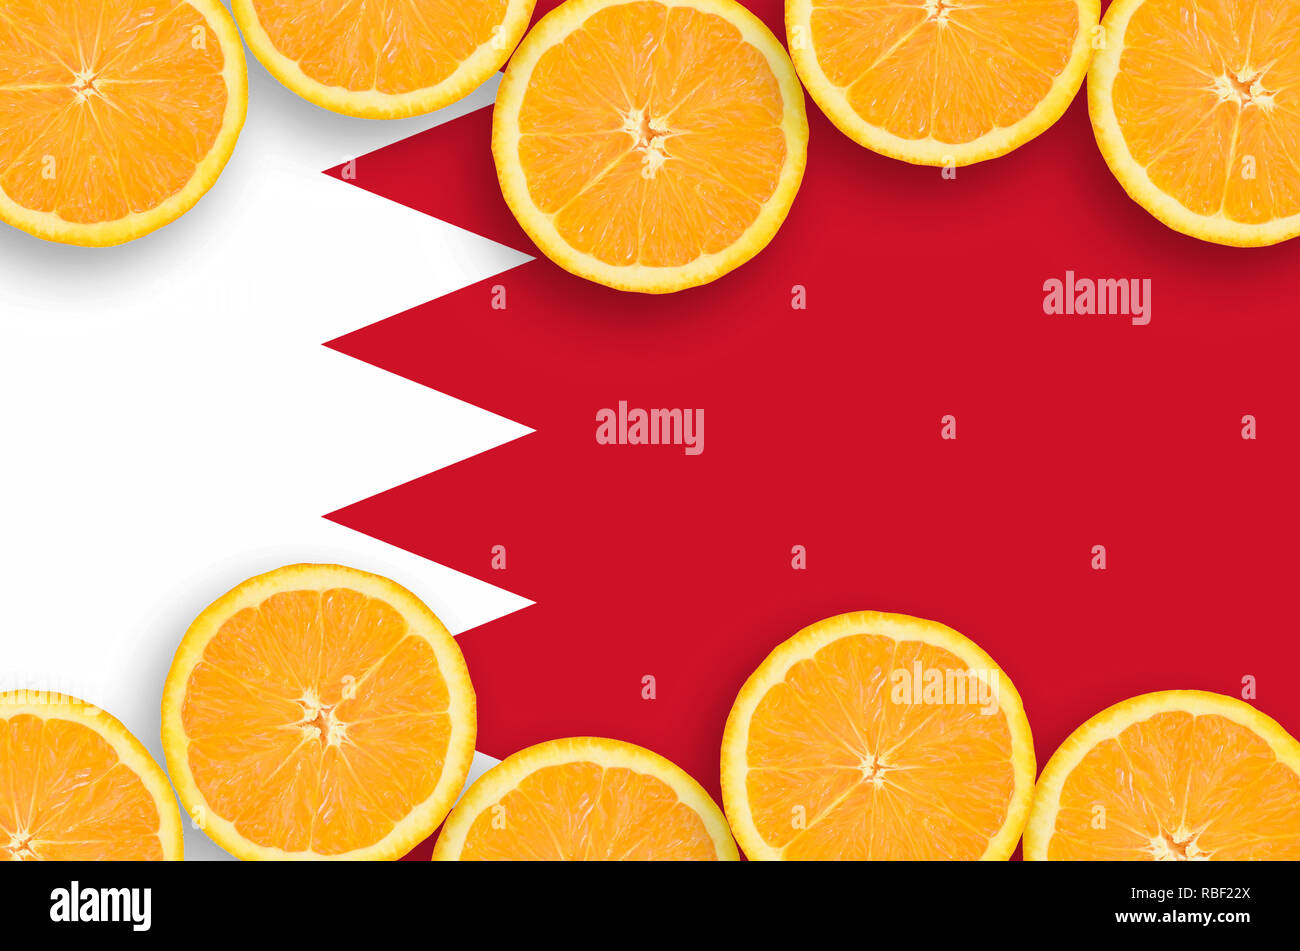 Drapeau de Bahreïn dans la structure horizontale des tranches d'agrumes orange. Concept de croissance et de l'importation et l'exportation des agrumes Banque D'Images